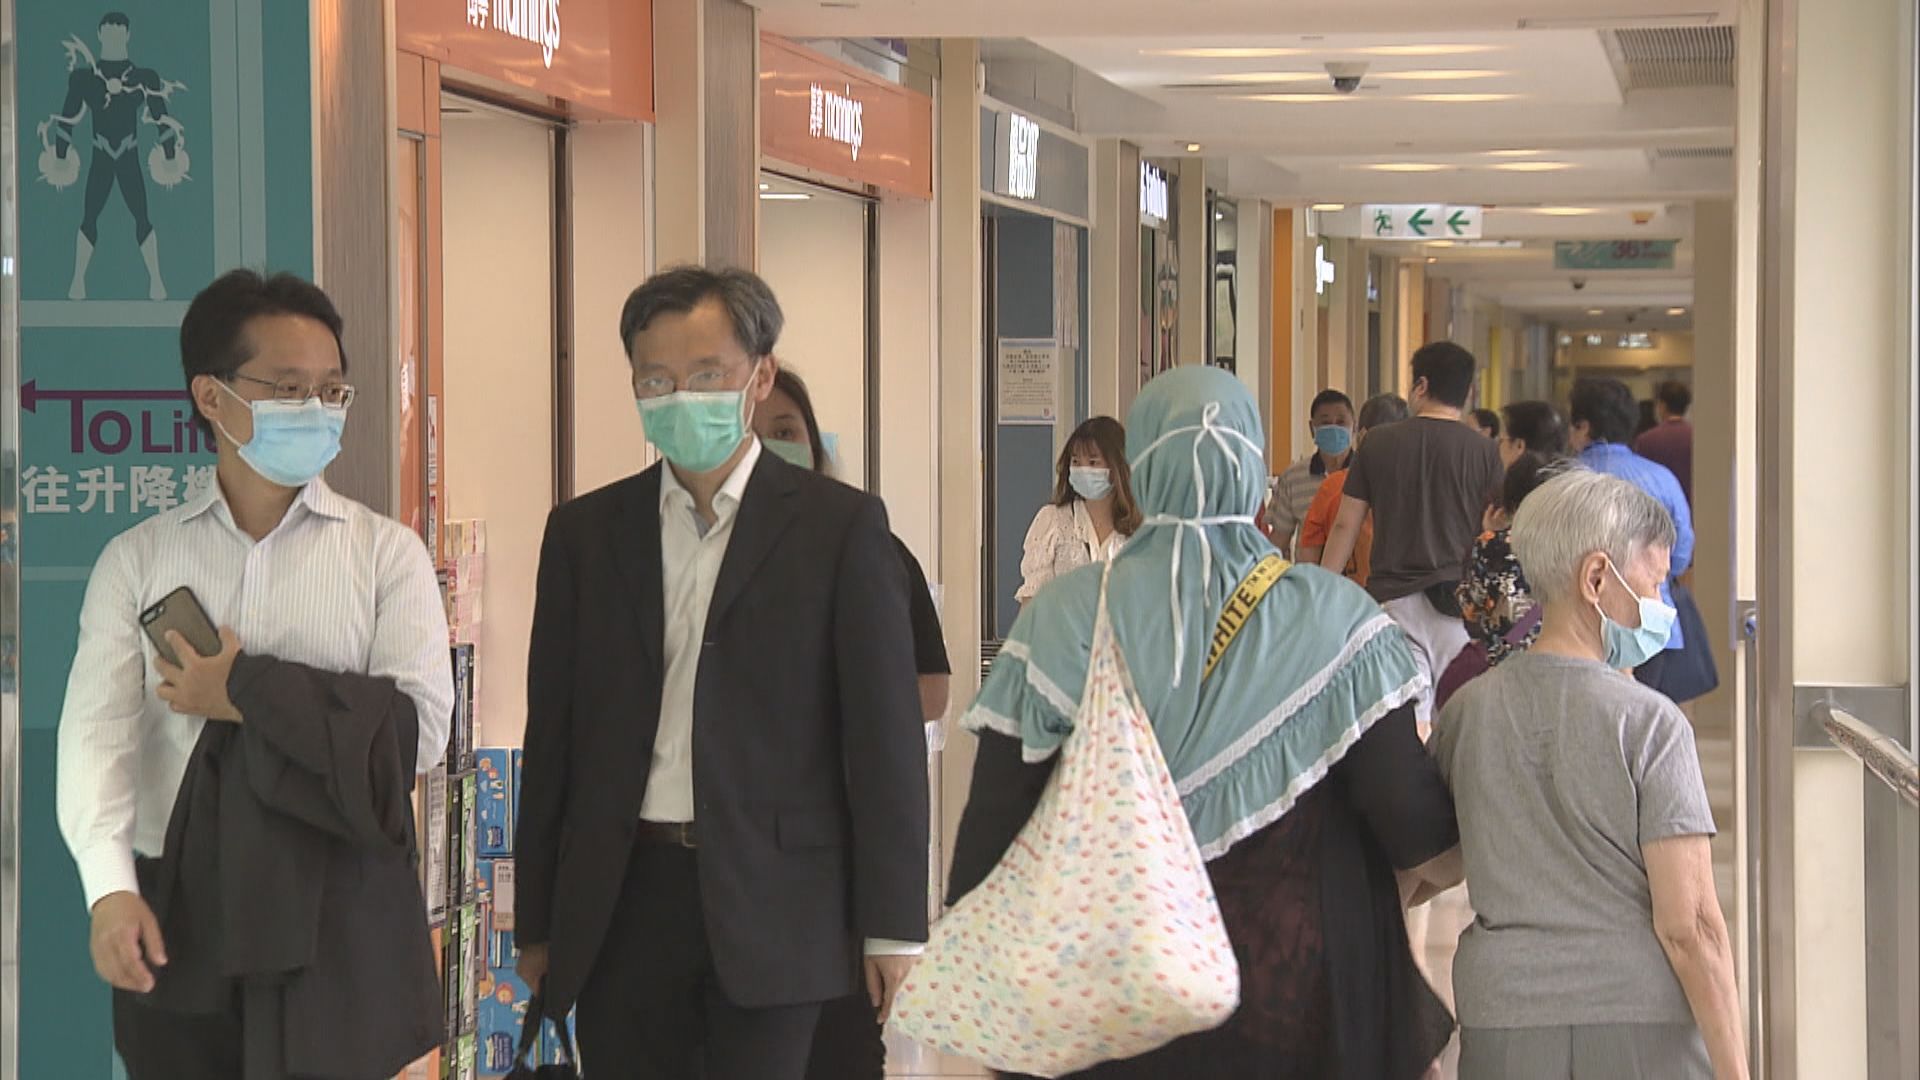 消息：行會通過室內公共場所強制戴口罩